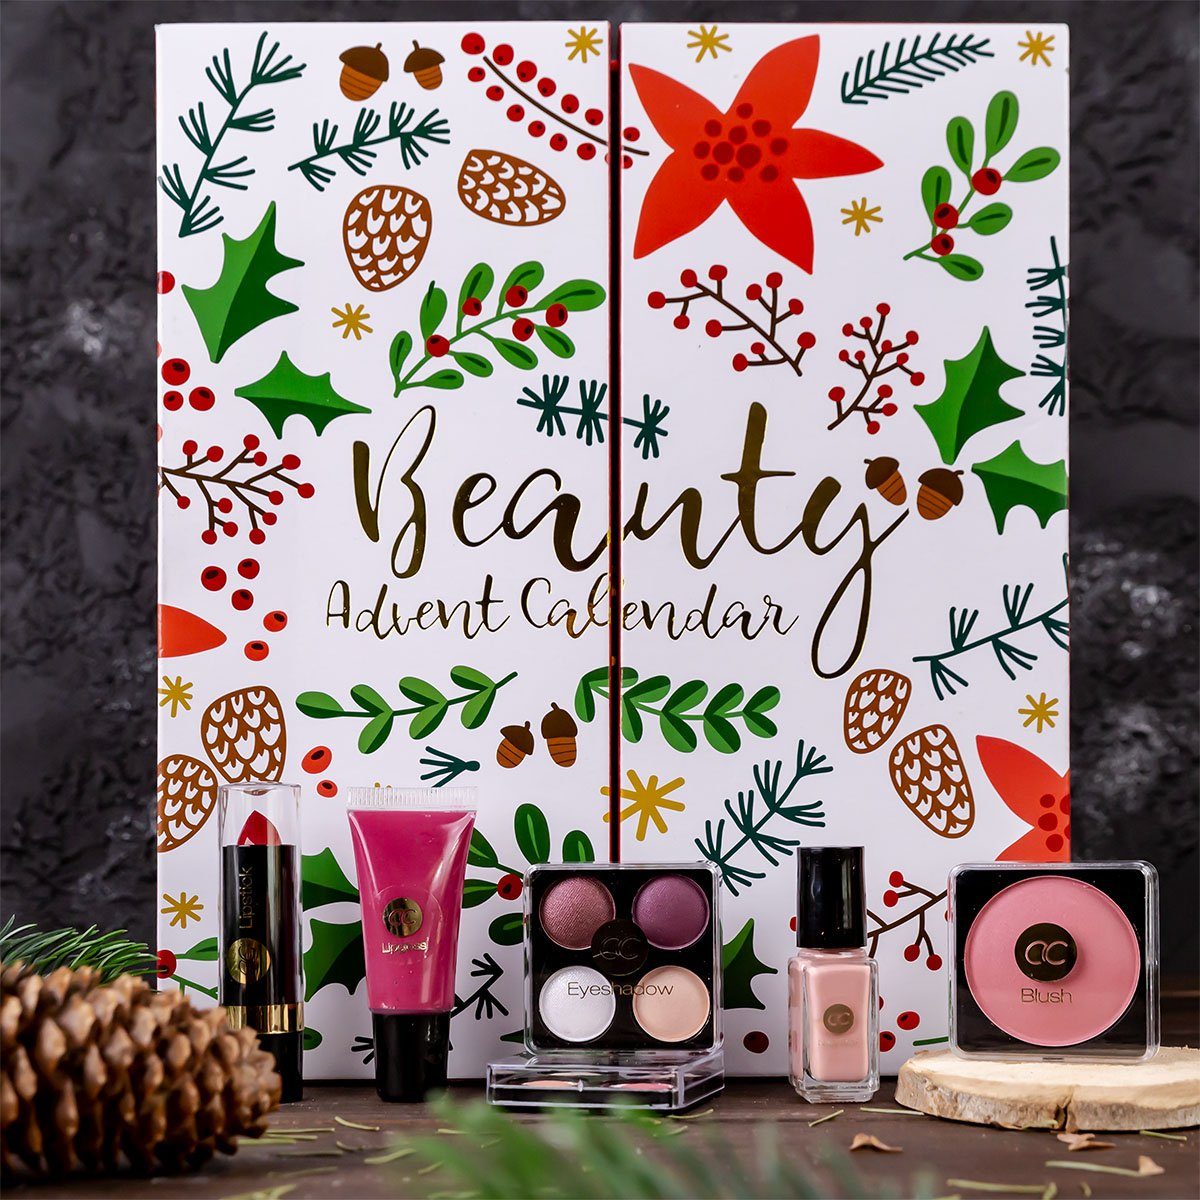 ACCENTRA Adventskalender Adventskalender zum Kosmetik Hello Winter, mit mit aufklappen Kalender Türchen 24